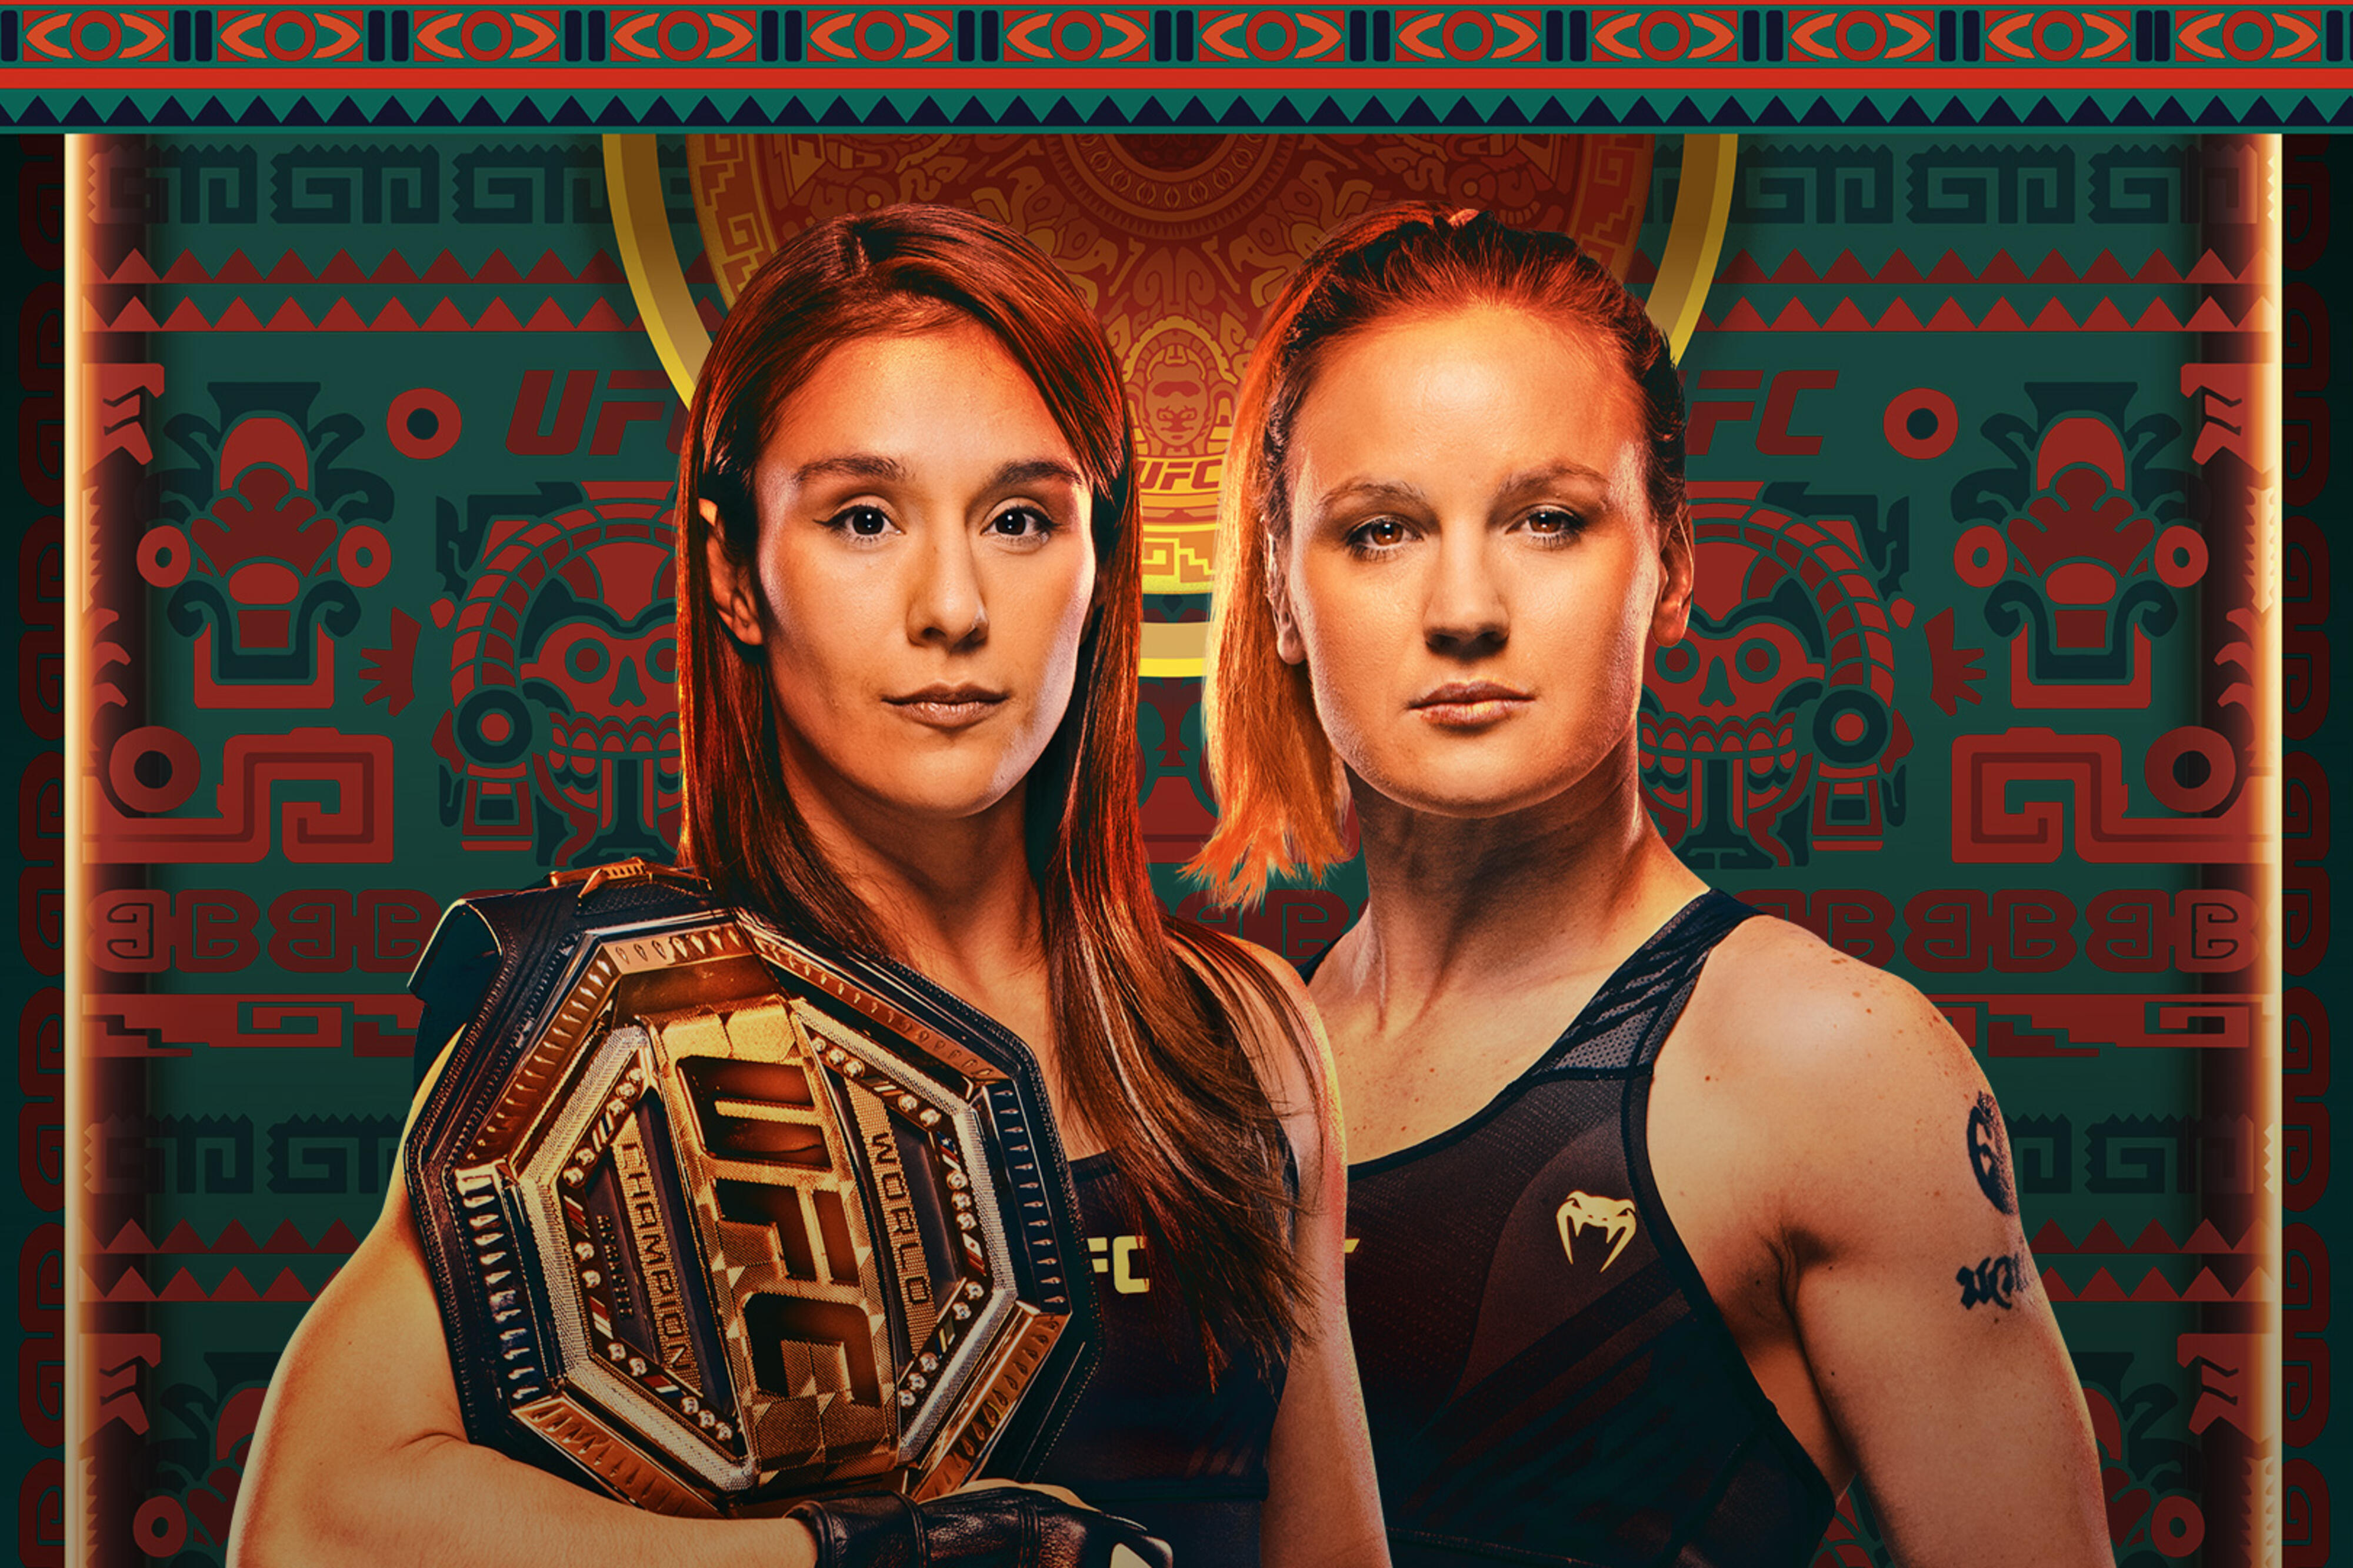 UFC on ESPN+ 85 - Las Vegas - Poster et affiche